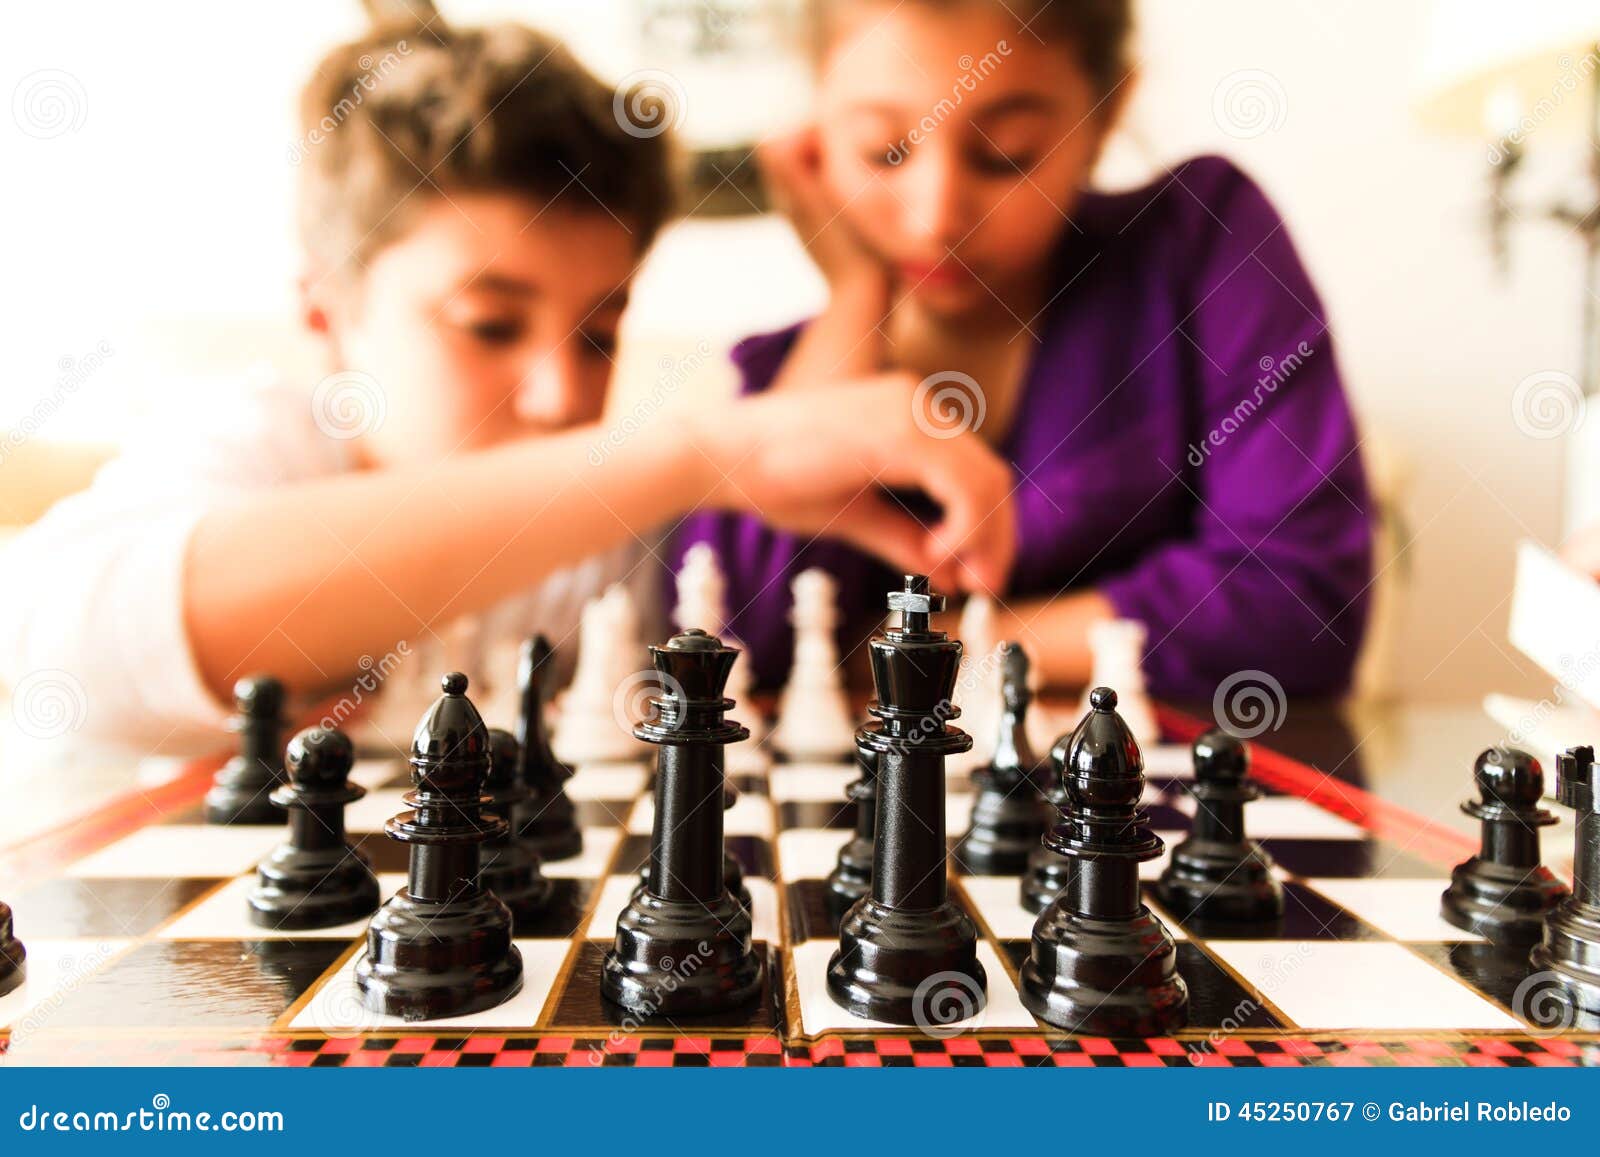 kids playing chess